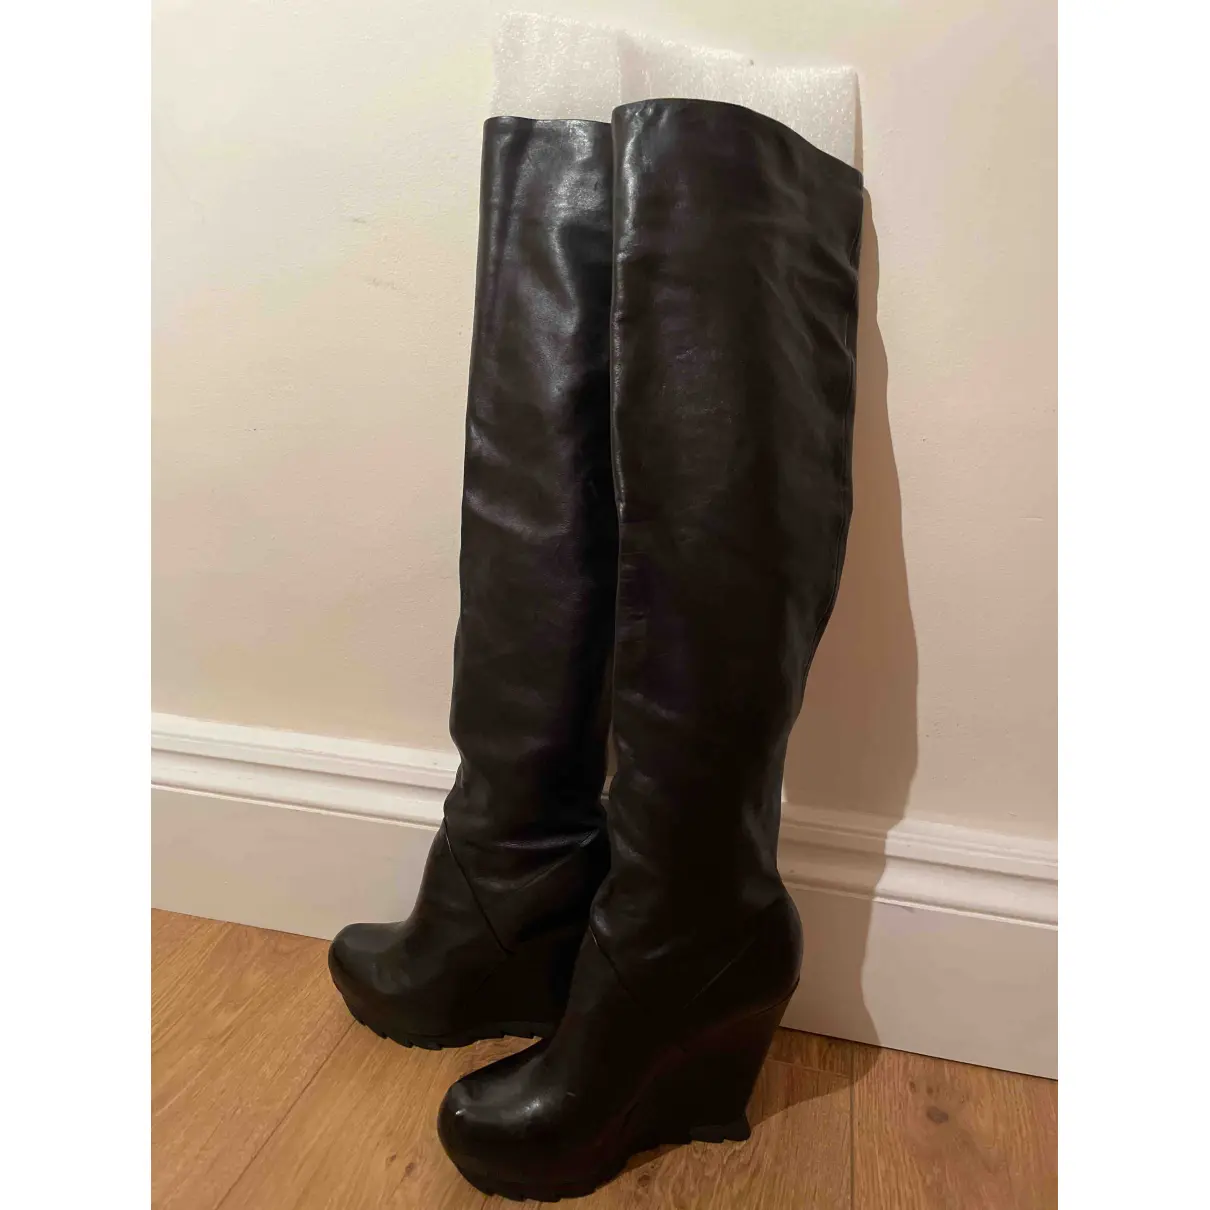 Buy Camilla Skovgaard Leather boots online